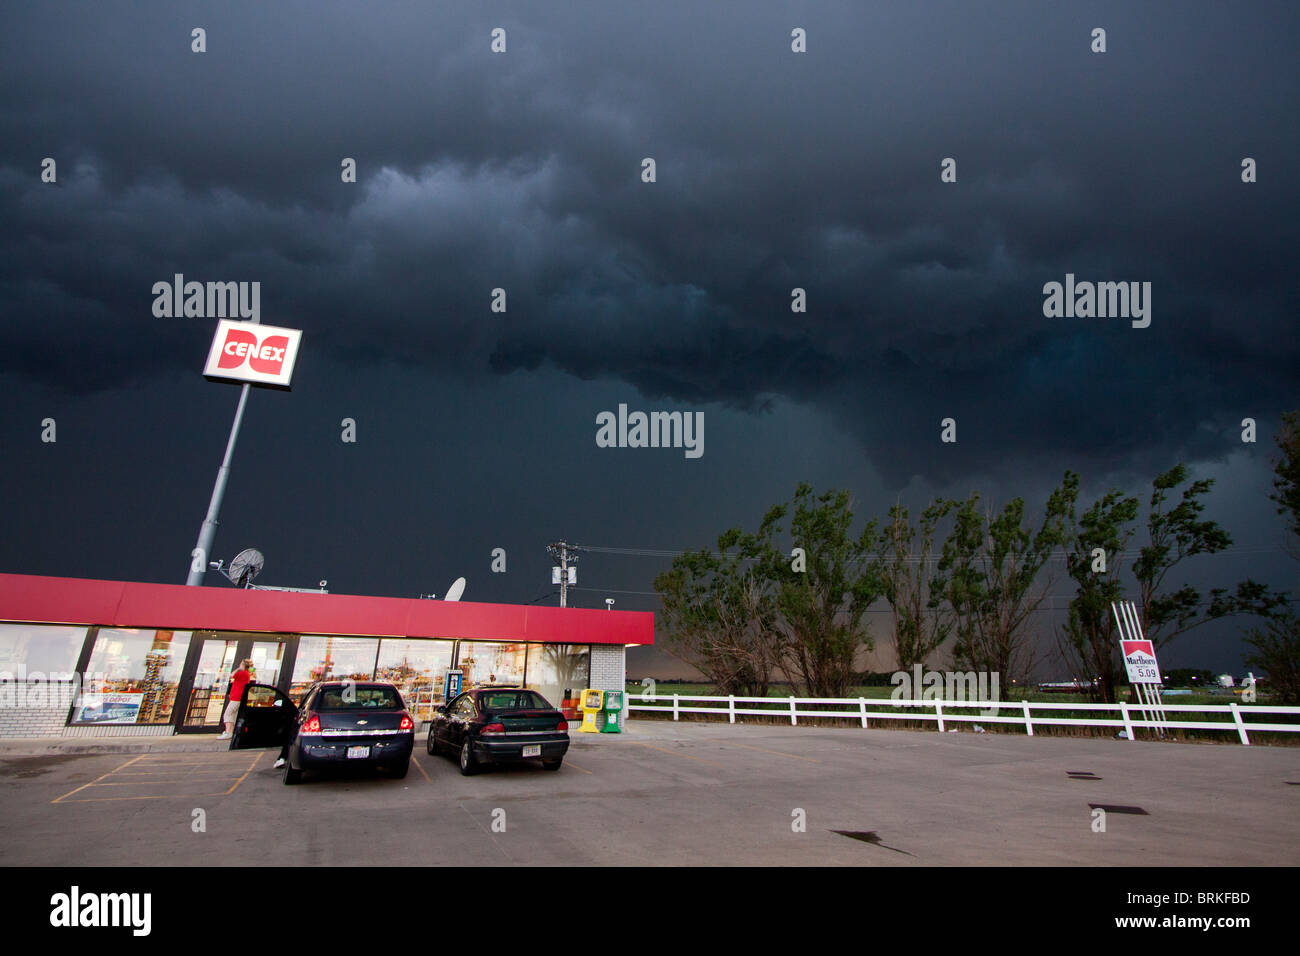 Eine Unwetterfront senkt sich auf eine Cenex-Station im ländlichen Nebraska, USA. Stockfoto